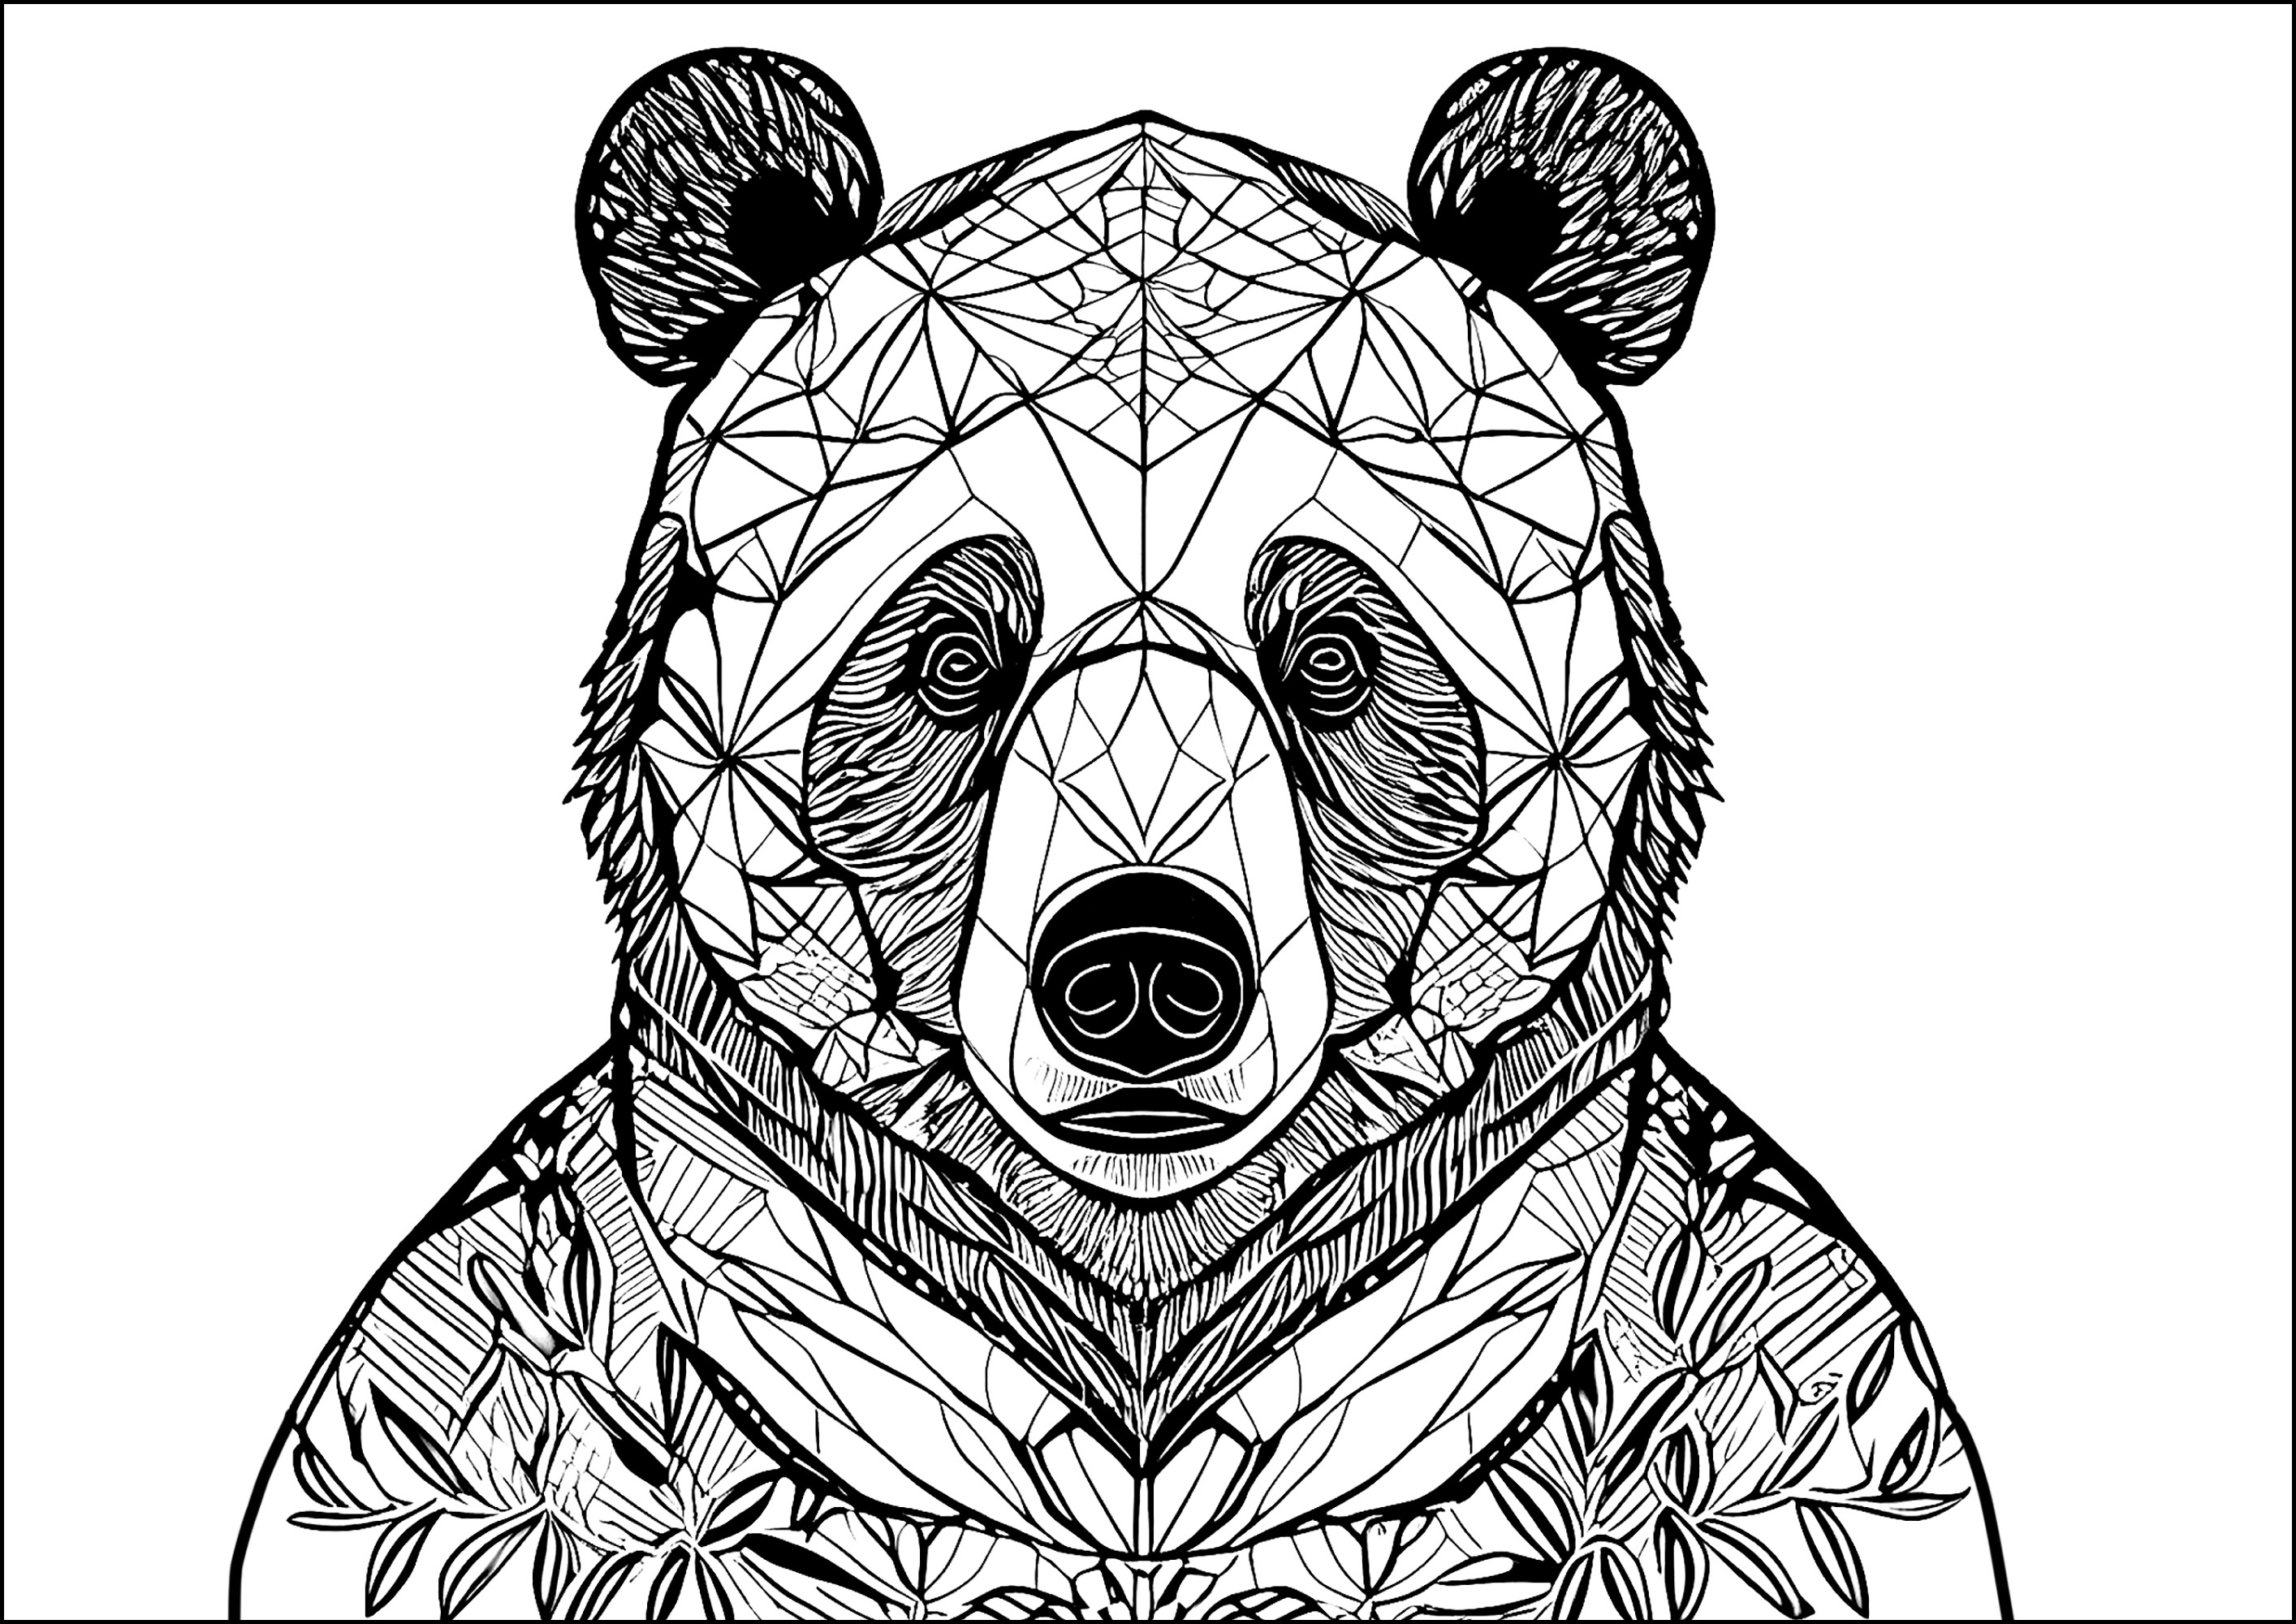 Grand ours avec motifs complexes. Un ours comportant de nombreux motifs complexes à colorier